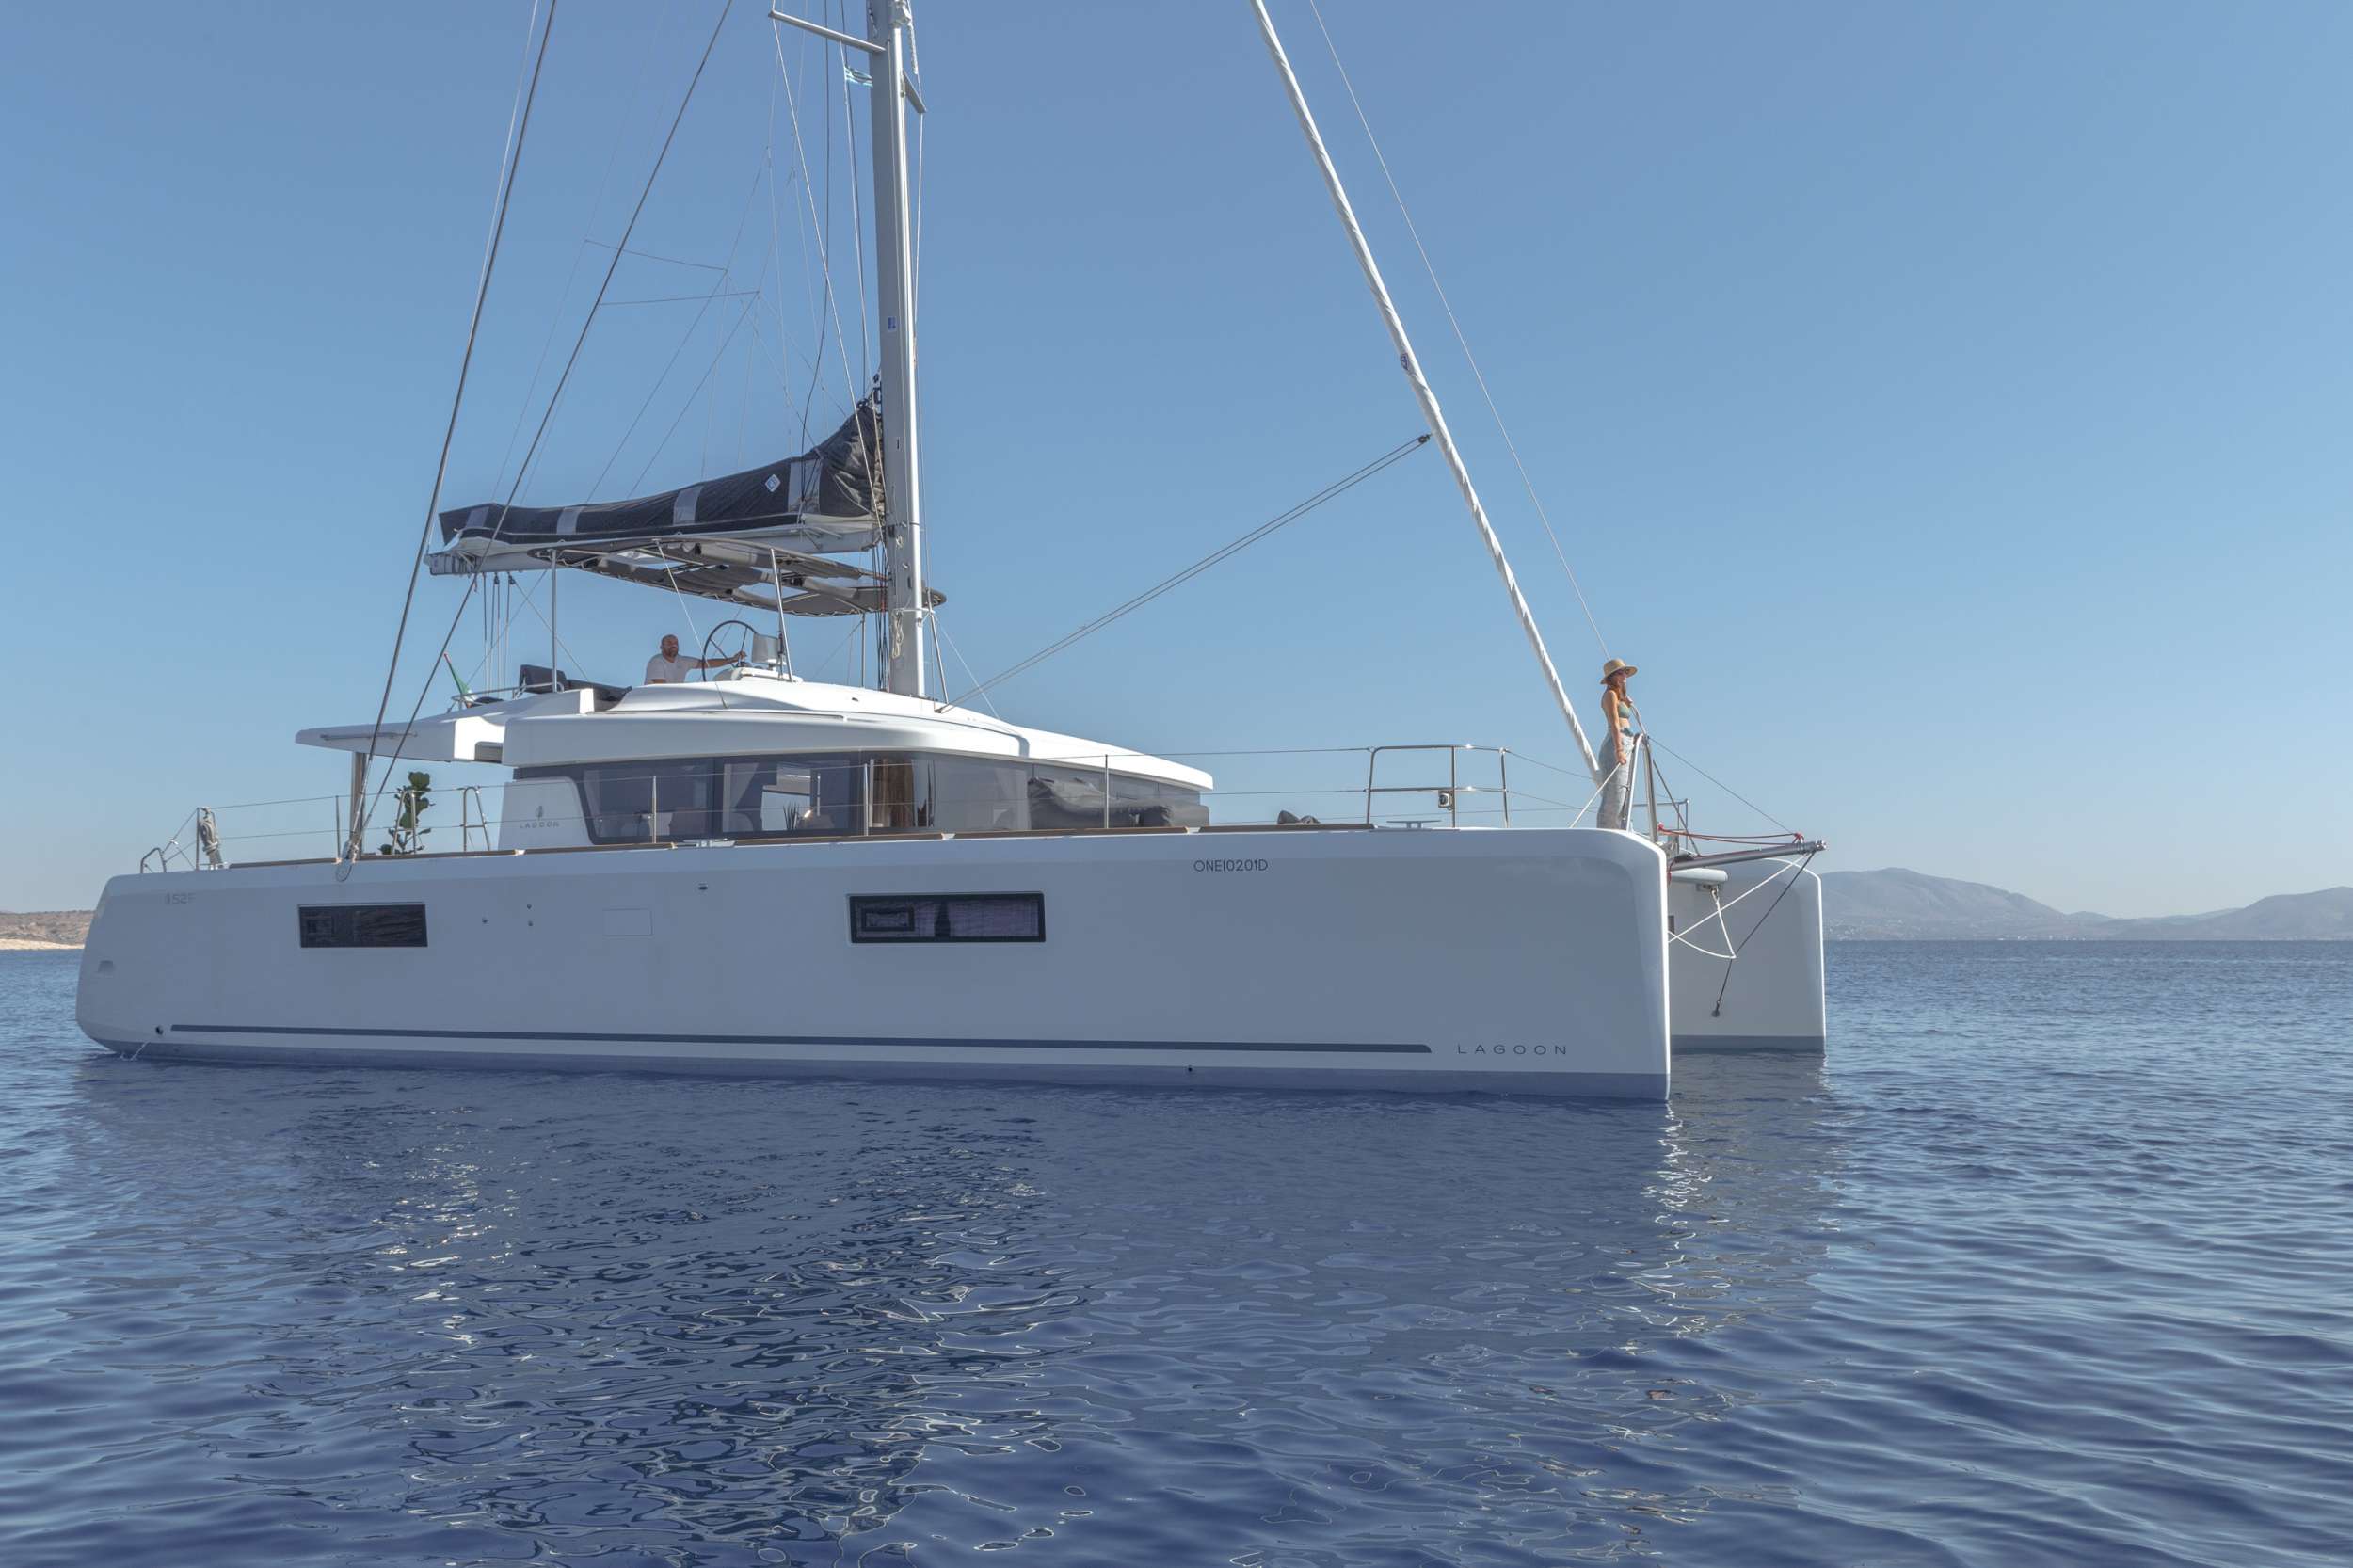 ONEIDA - Yacht Charter Kassandra & Boat hire in Greece 1